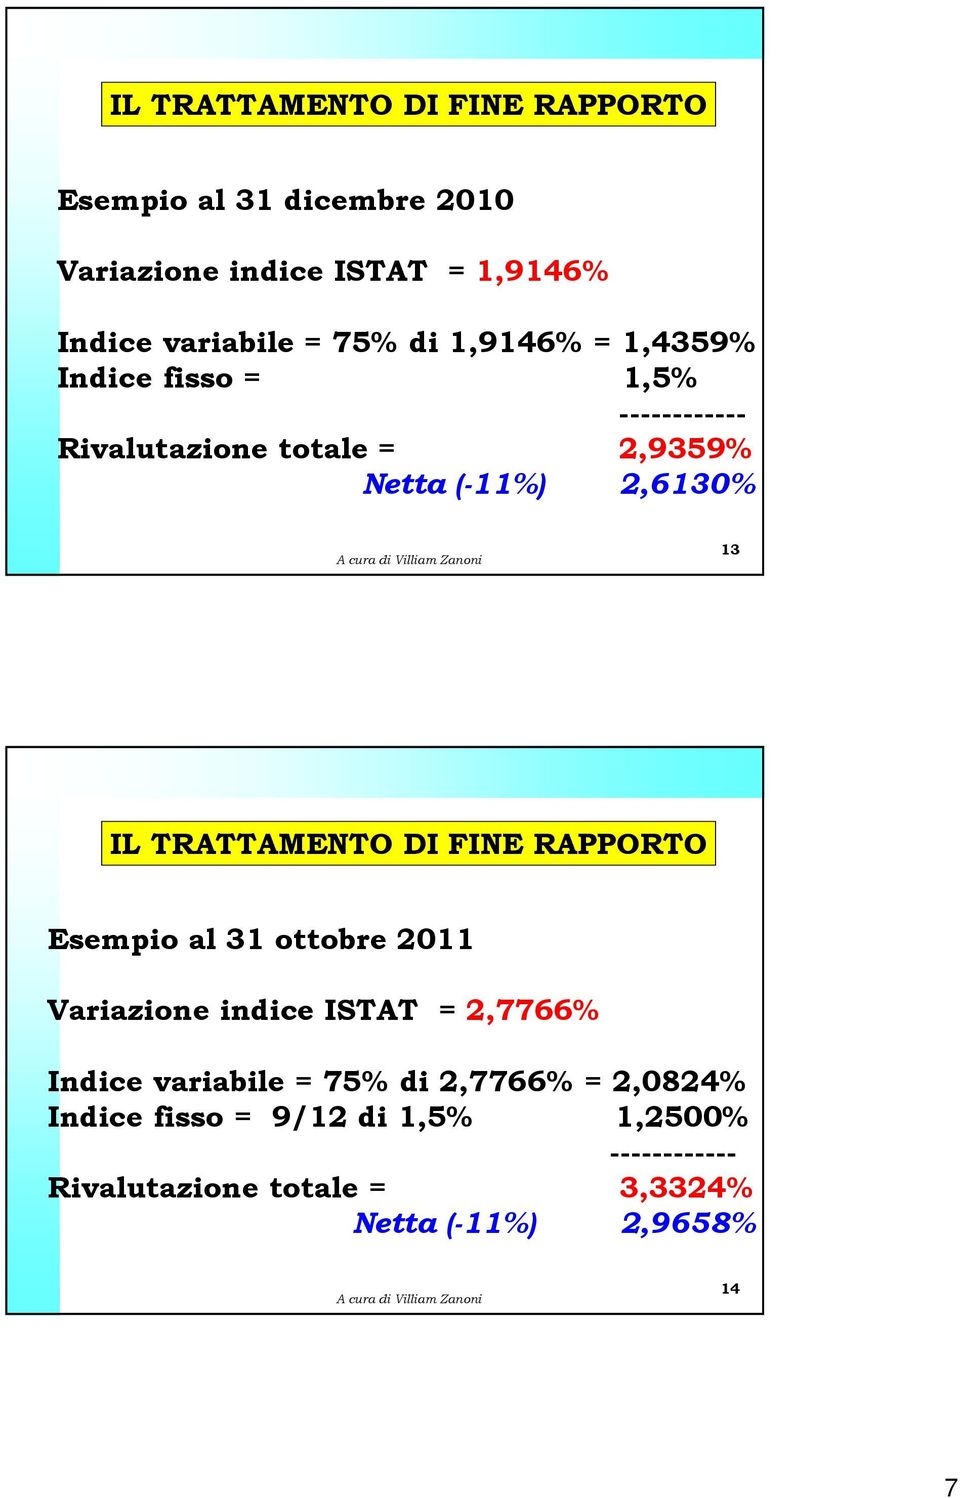 TRATTAMENTO DI FINE RAPPORTO Esempio al 31 ottobre 2011 Variazione indice ISTAT = 2,7766% Indice variabile = 75% di